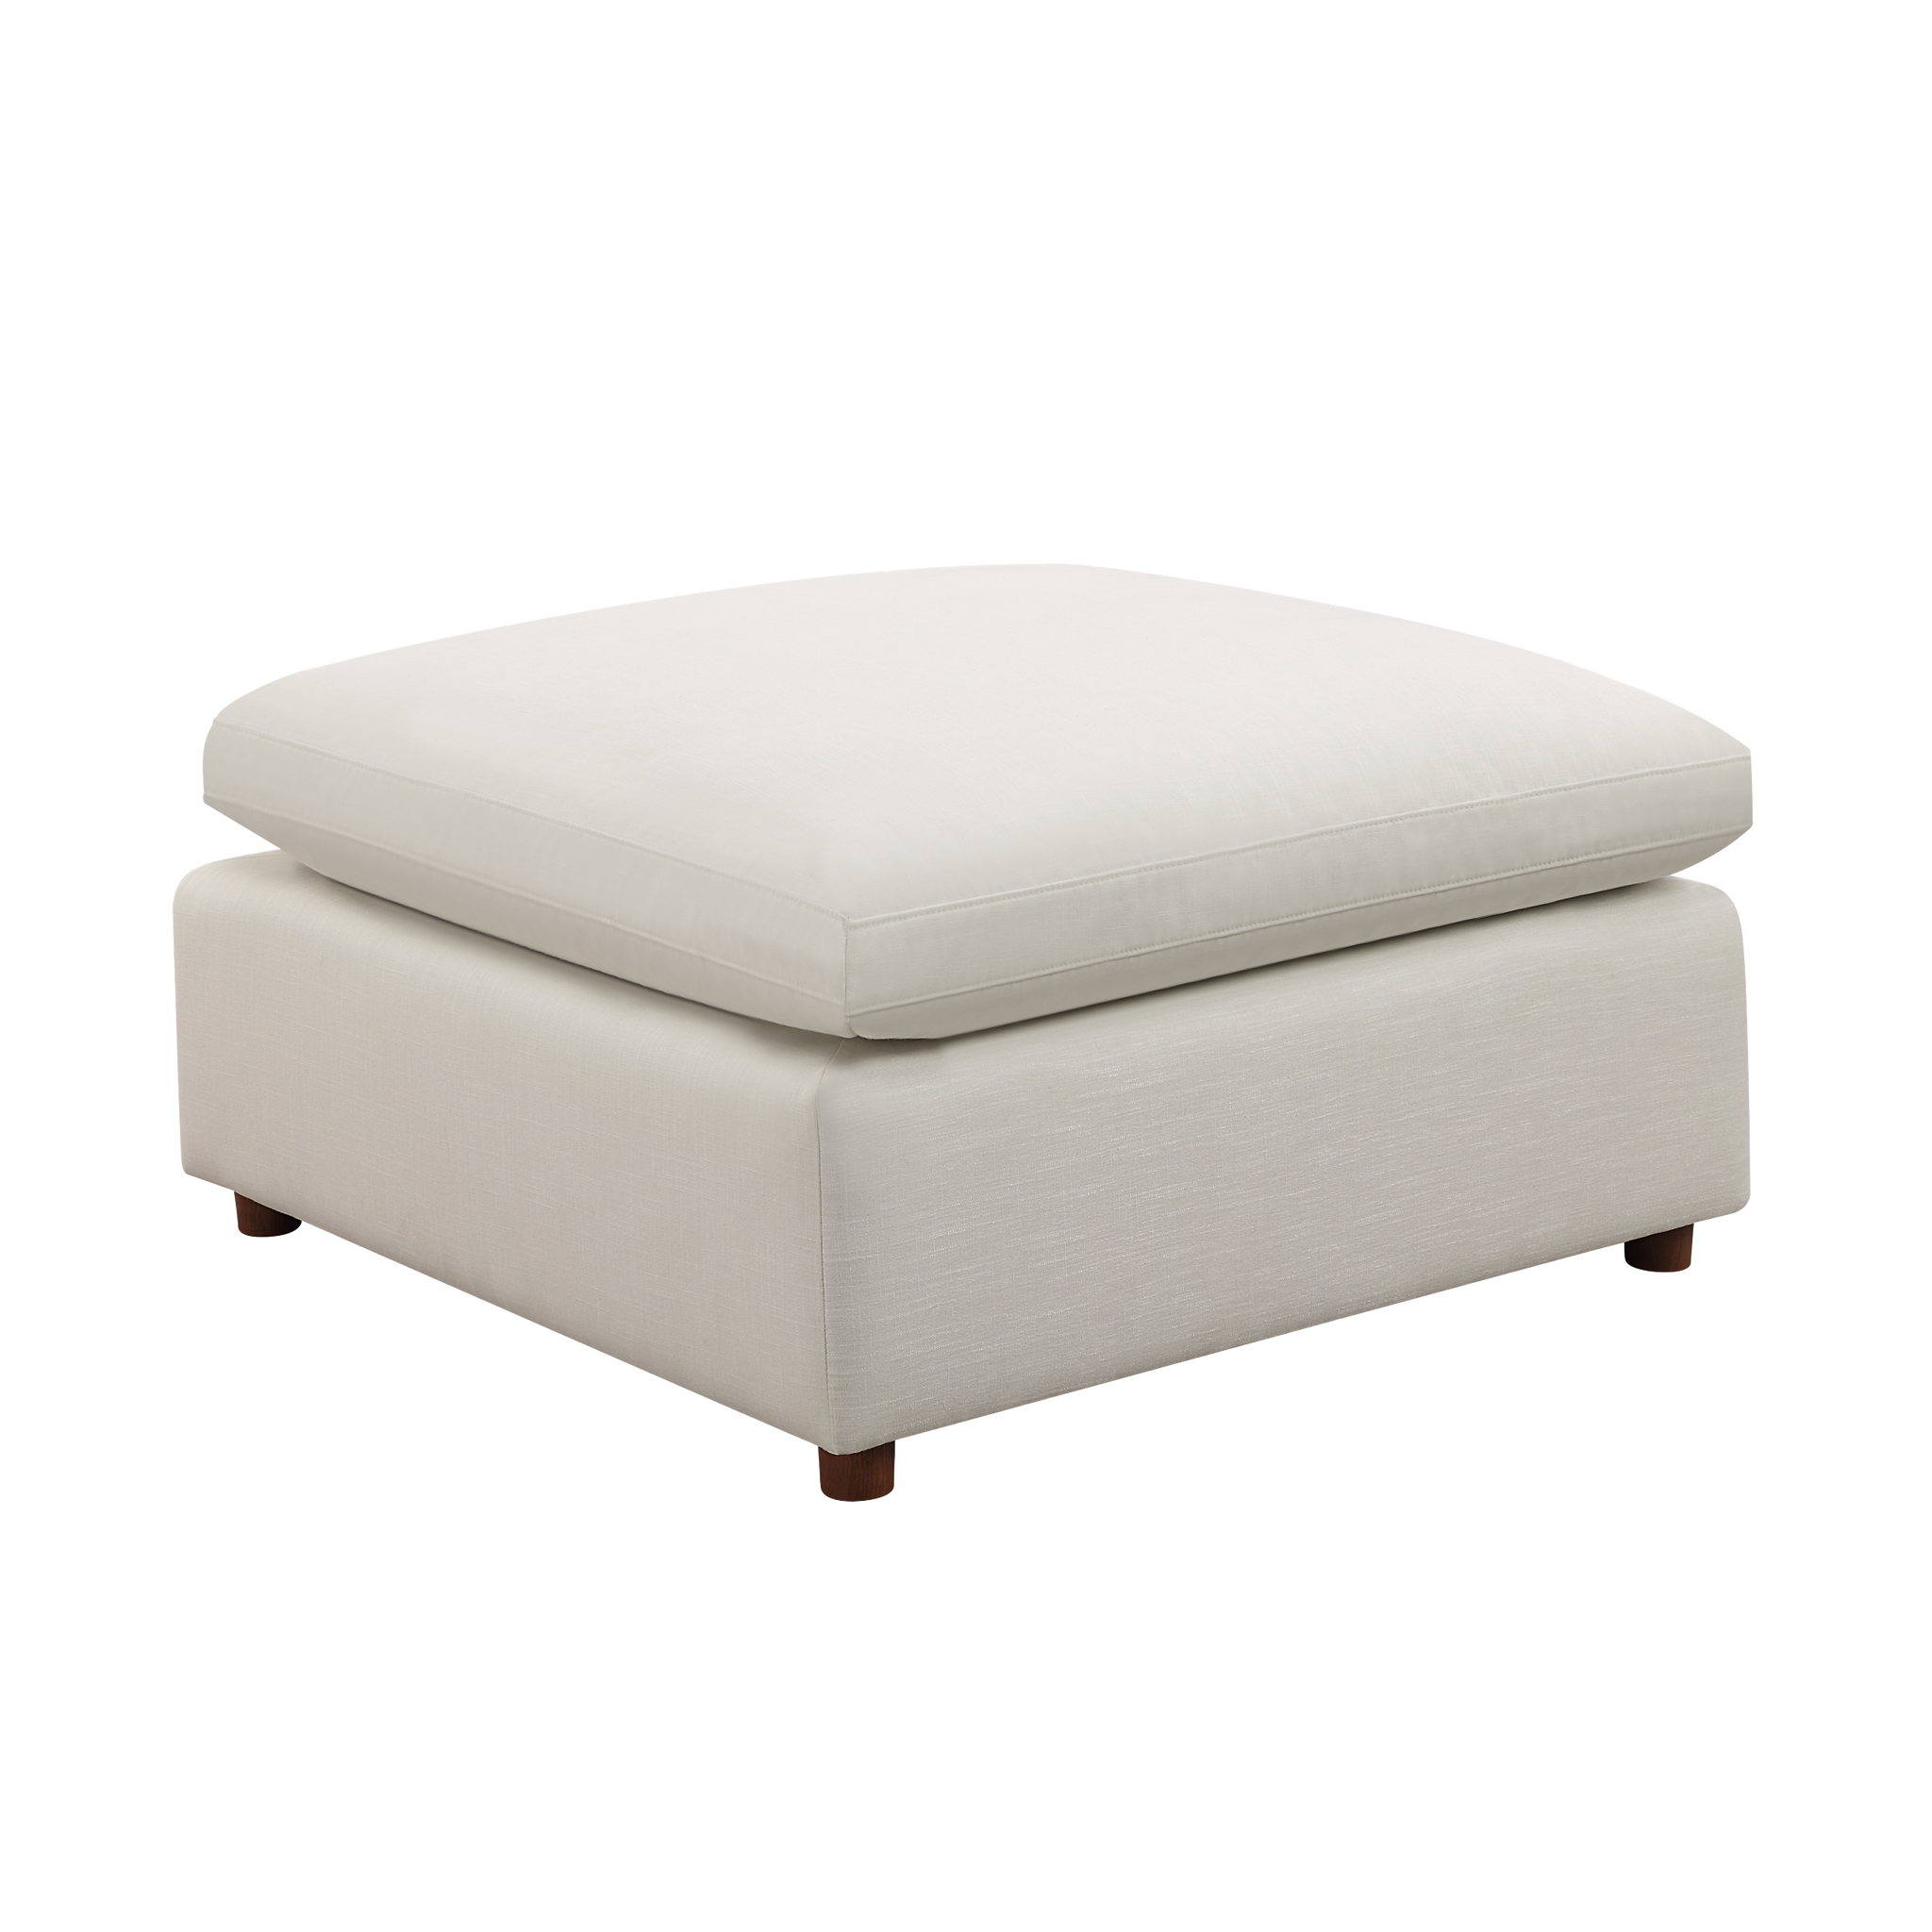 Modern Modular Sectional Sofa Set, Self customization white-linen